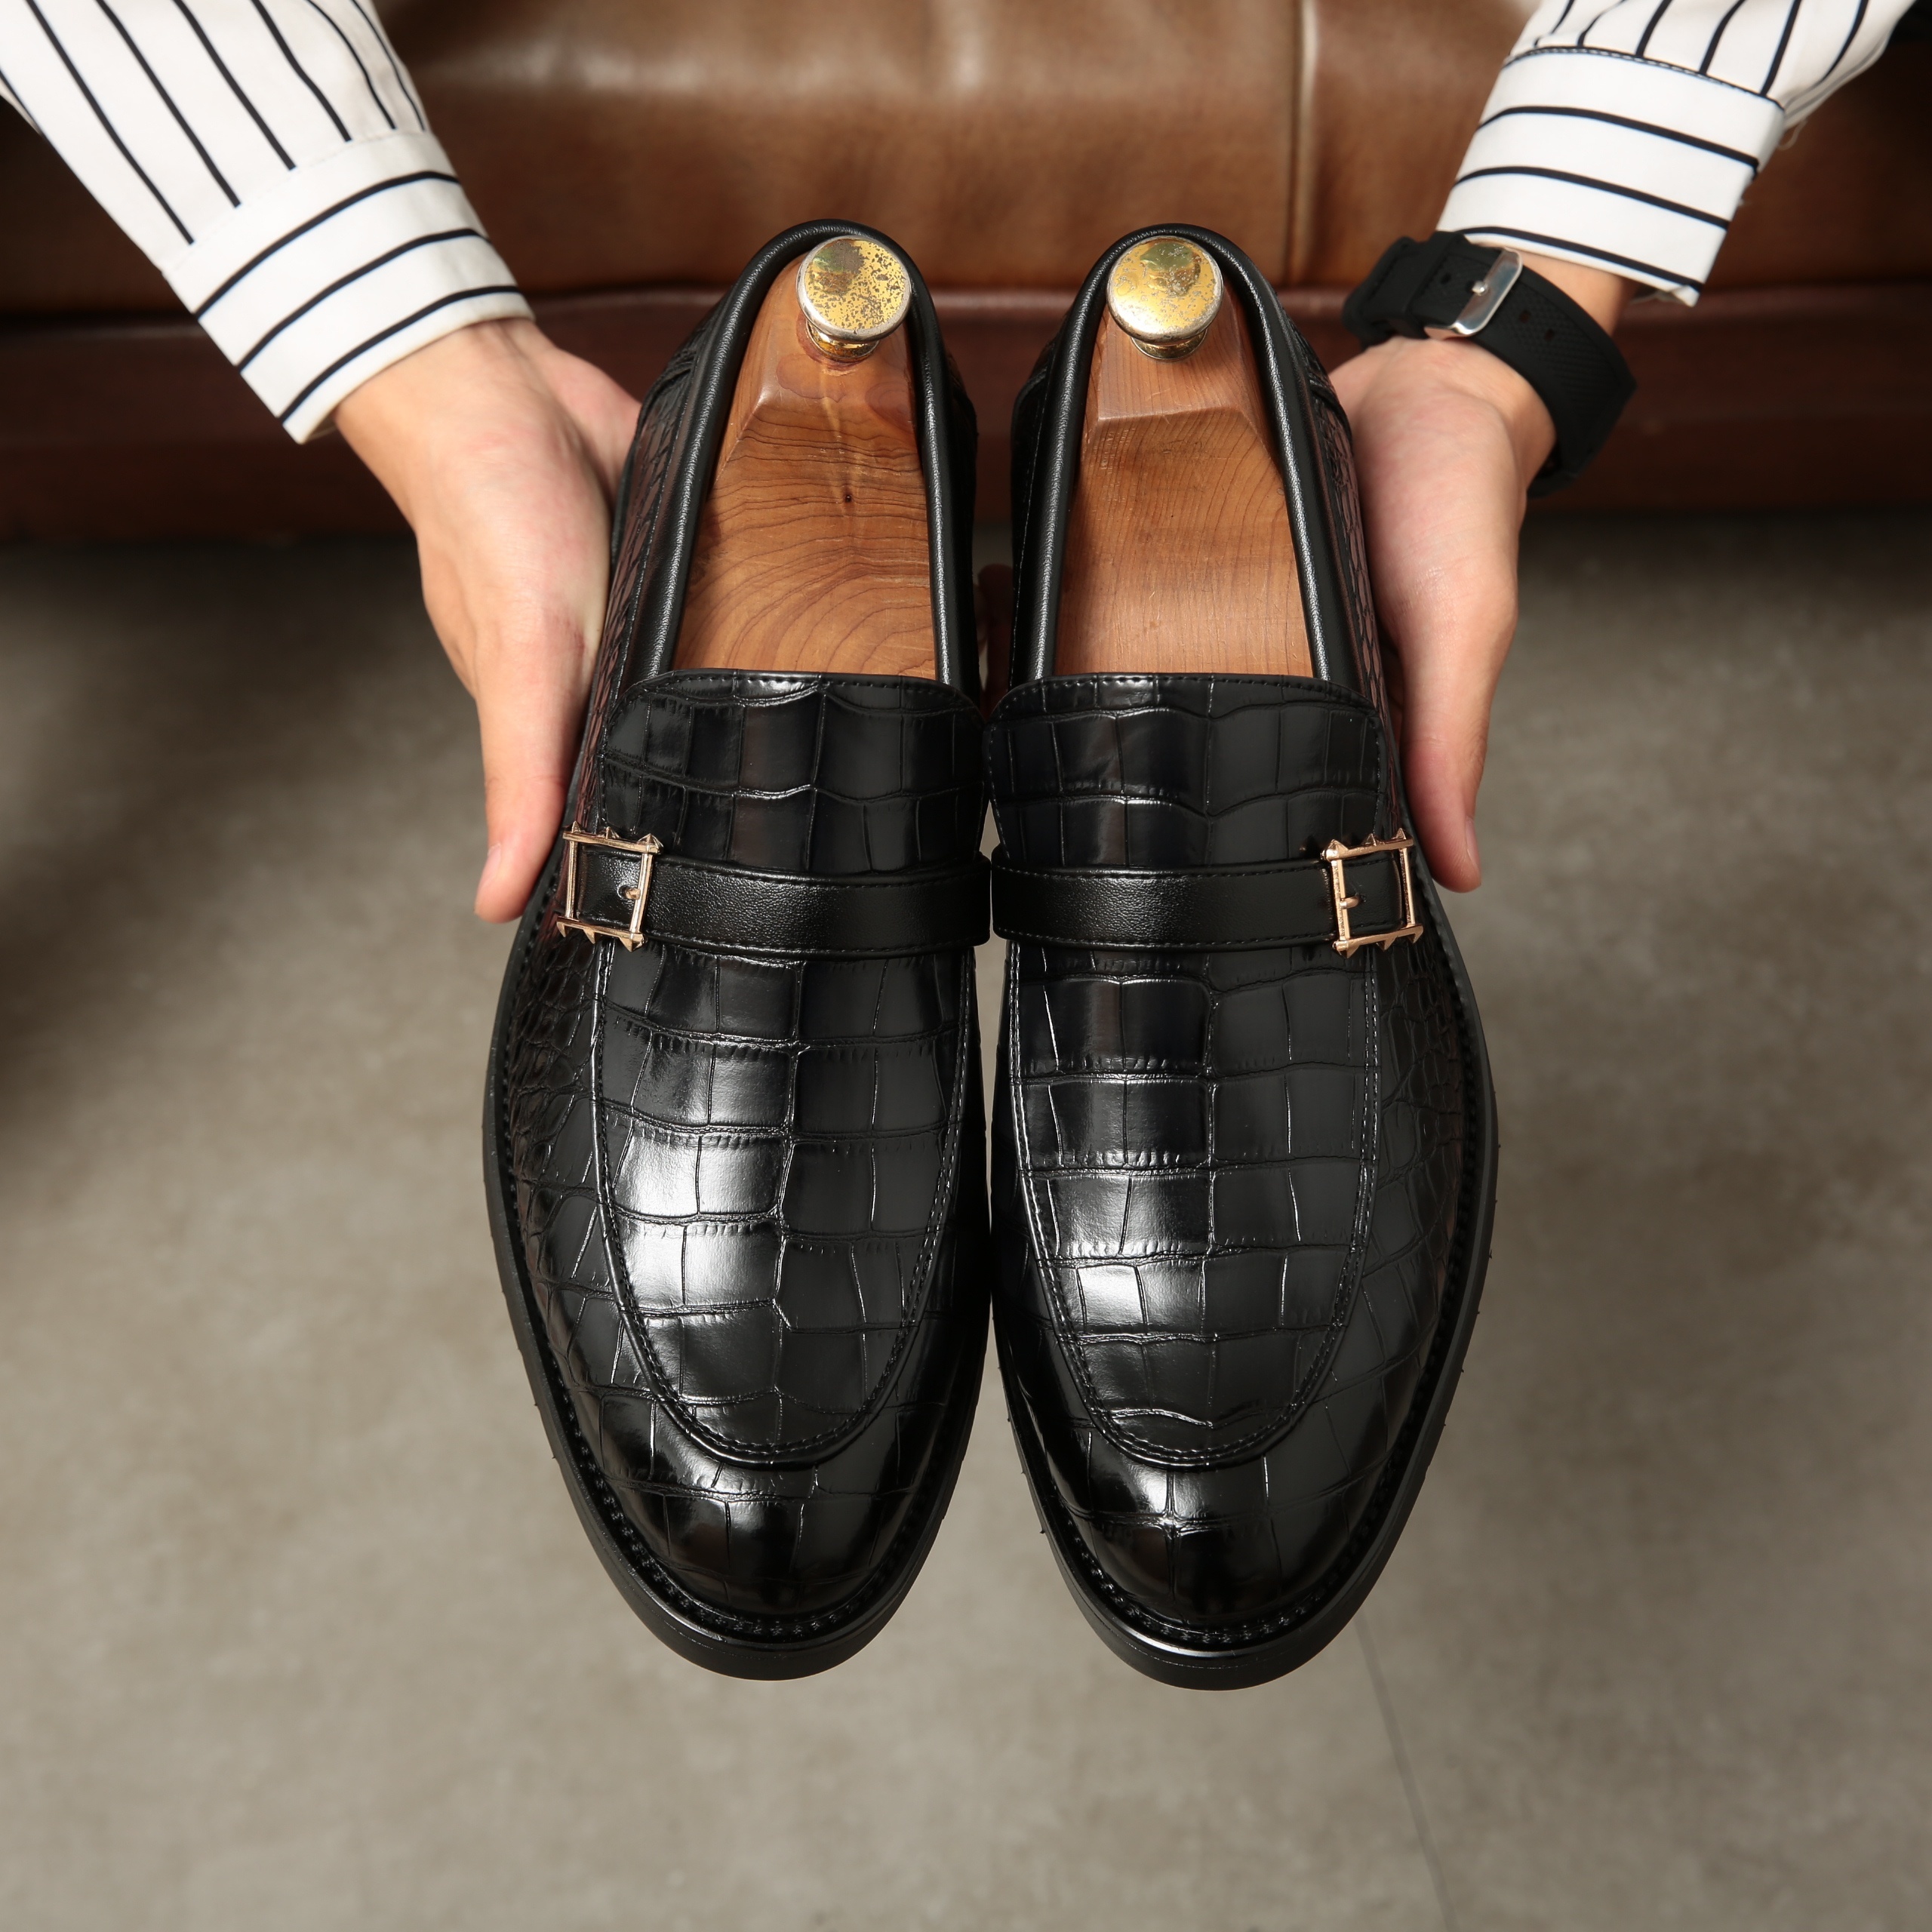 Handmade Black Crocodile Embossed Calfskin Leather Moccasins Loafer Shoes 4  Men